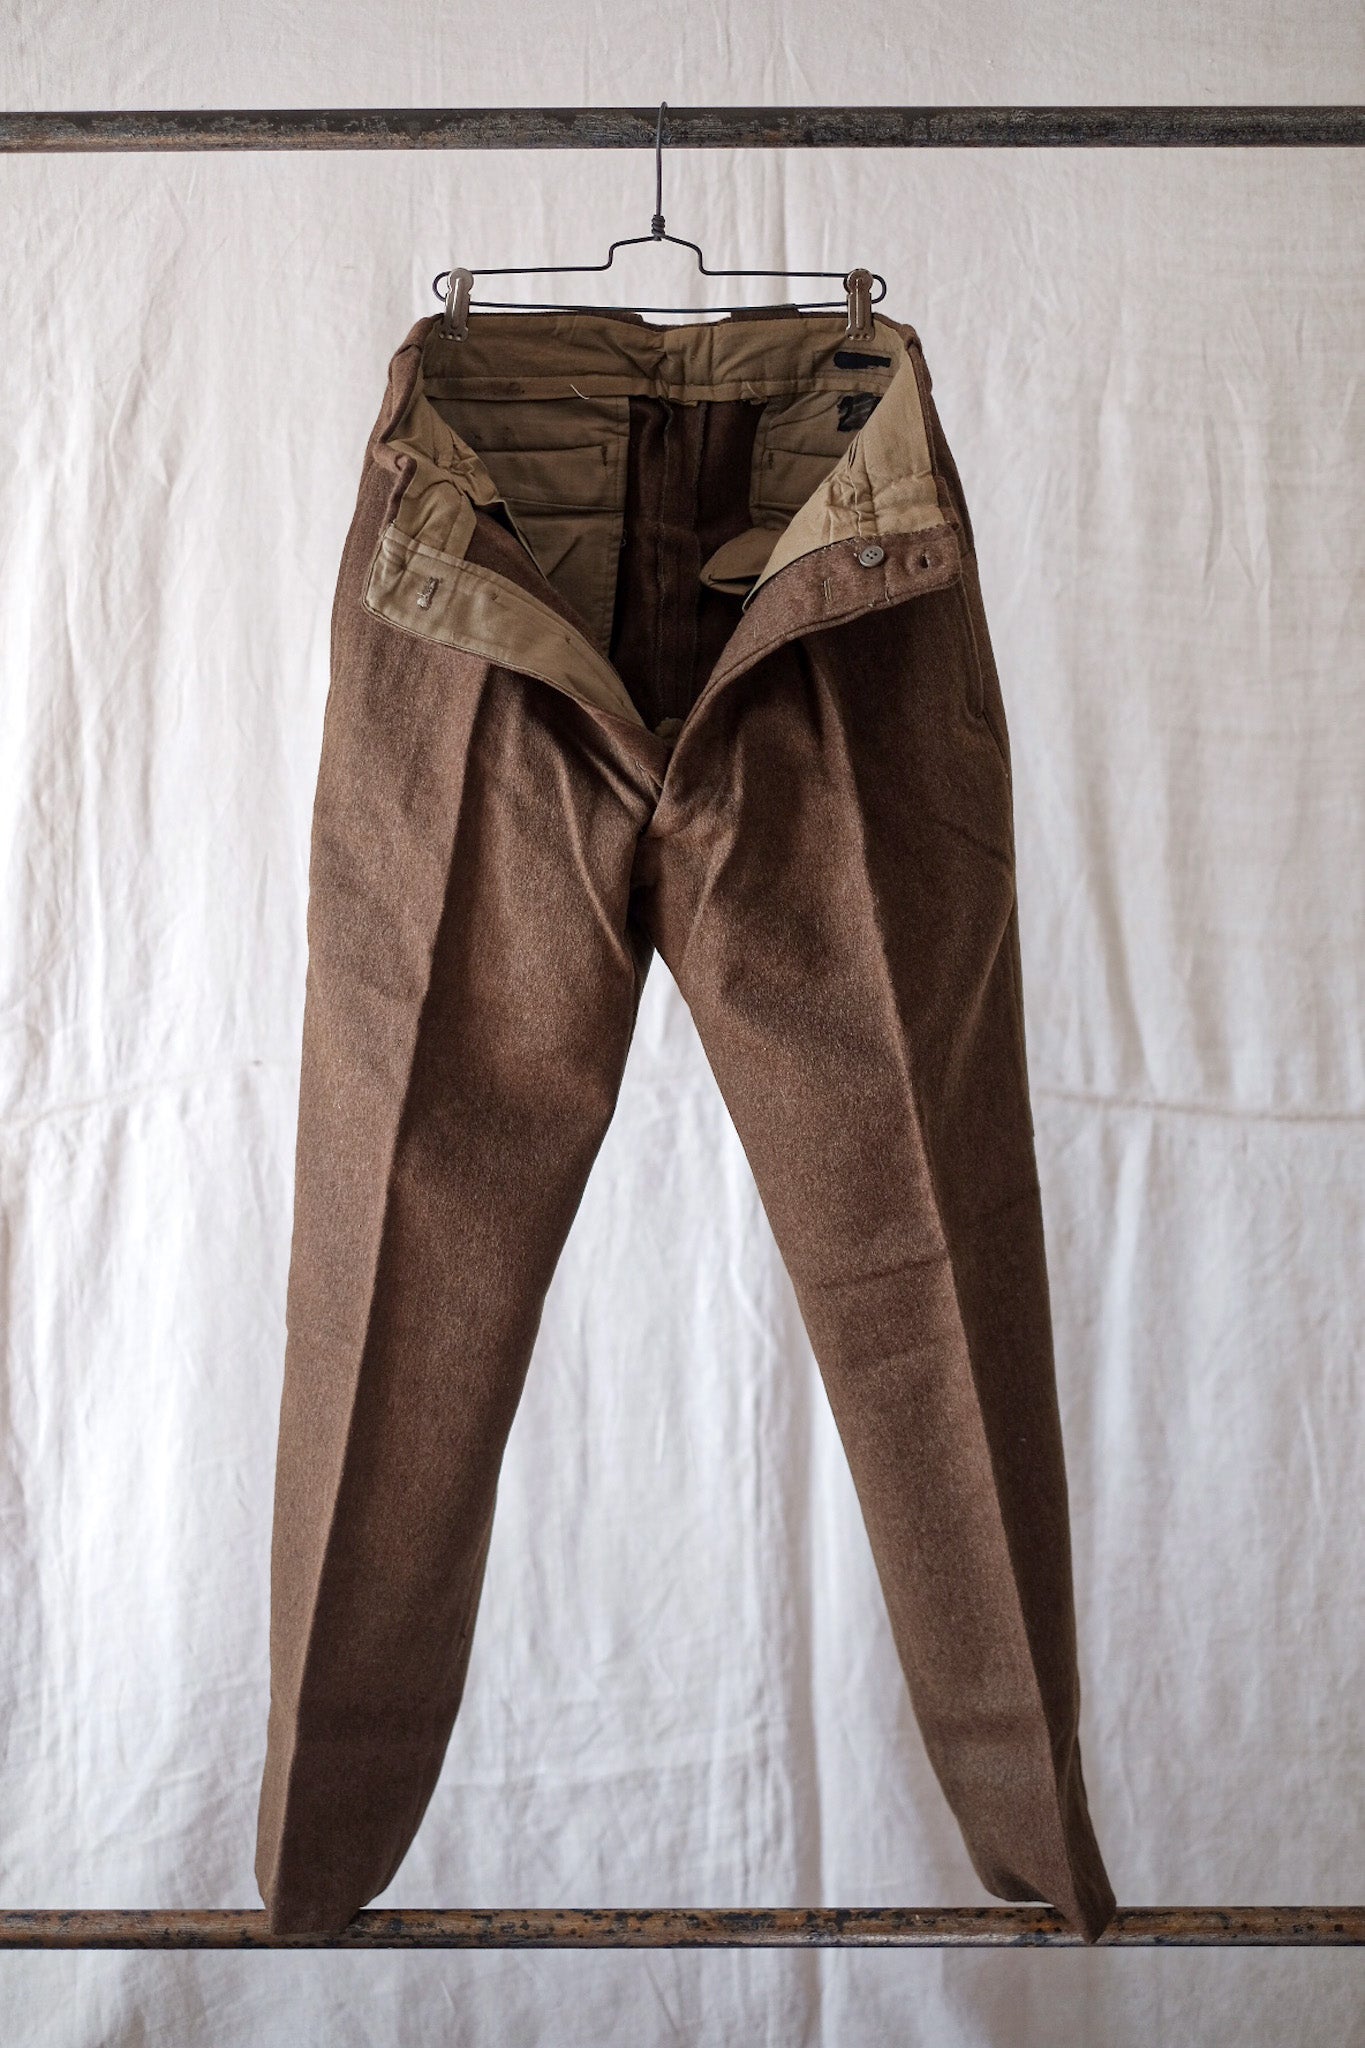 [~ 50's] กางเกงผ้าขนสัตว์สีน้ำตาลกองทัพบกฝรั่งเศส